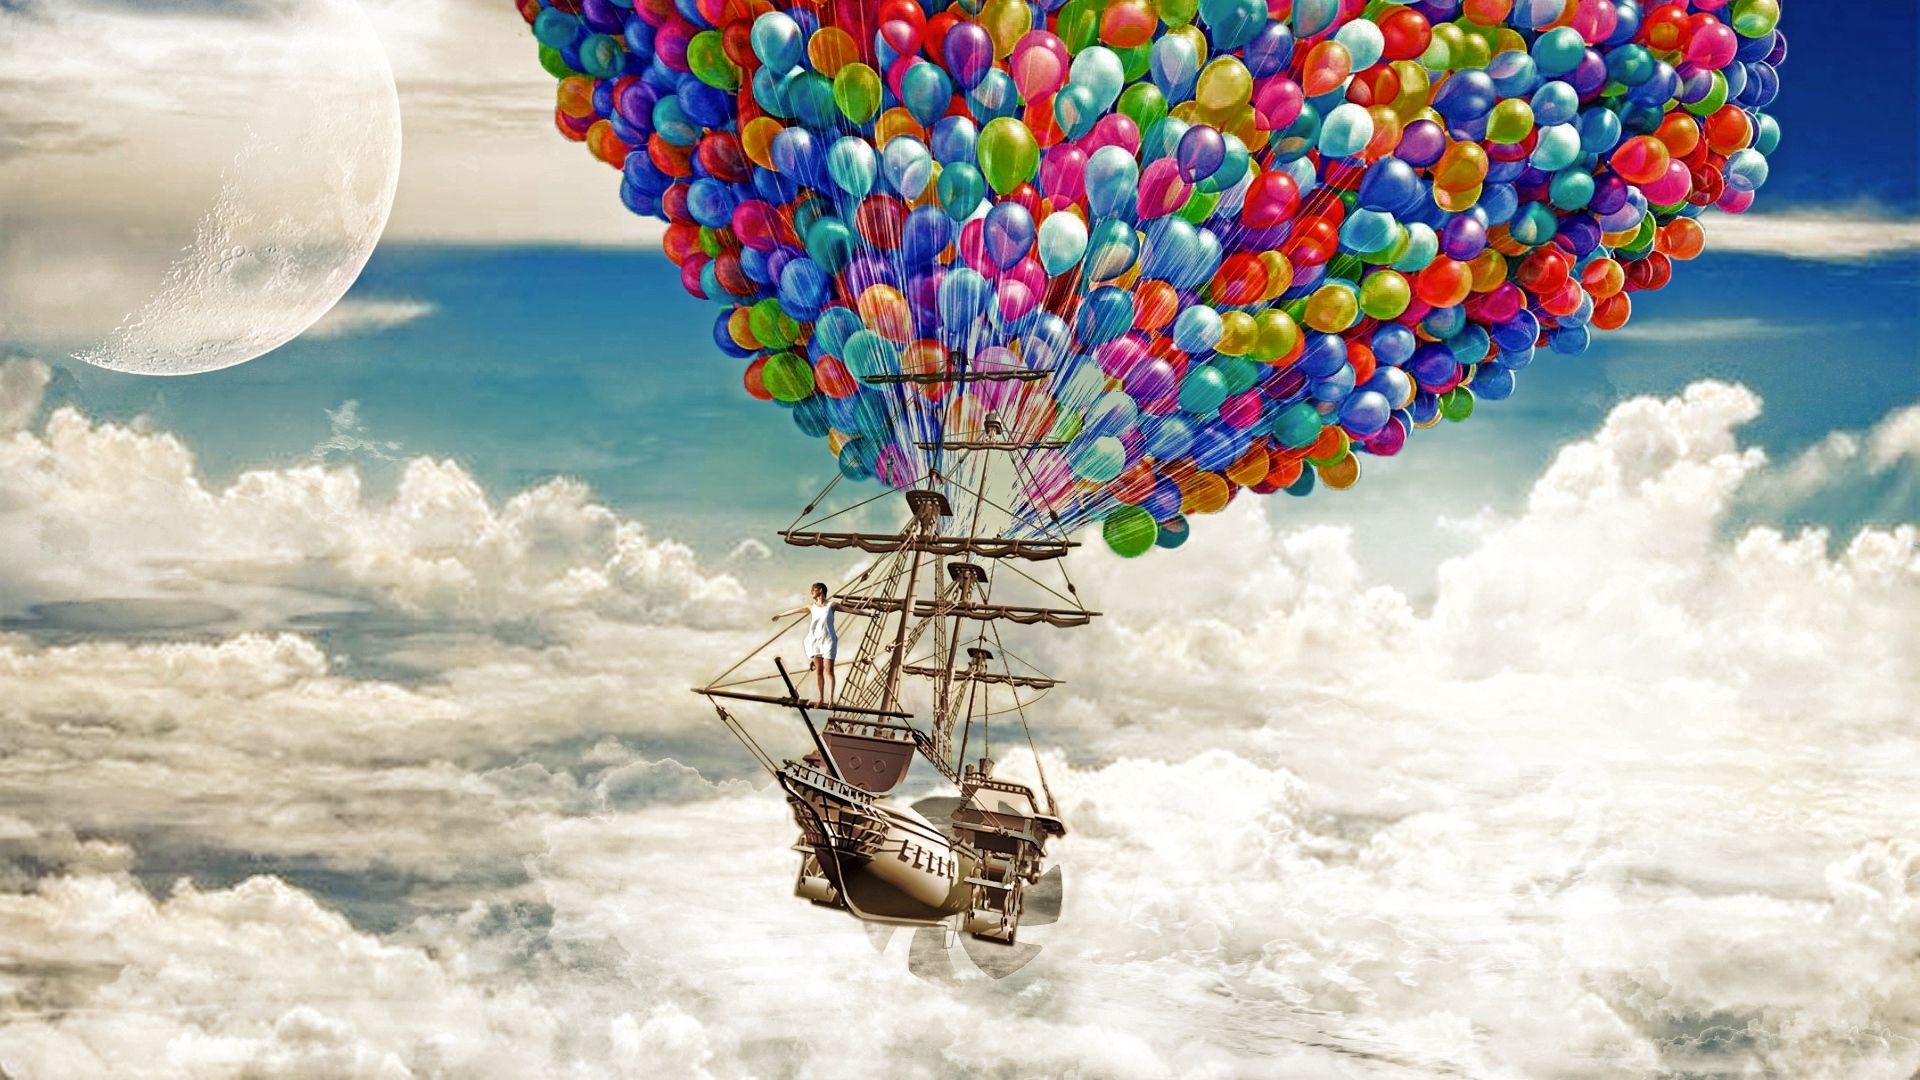 ship_sky_balloons